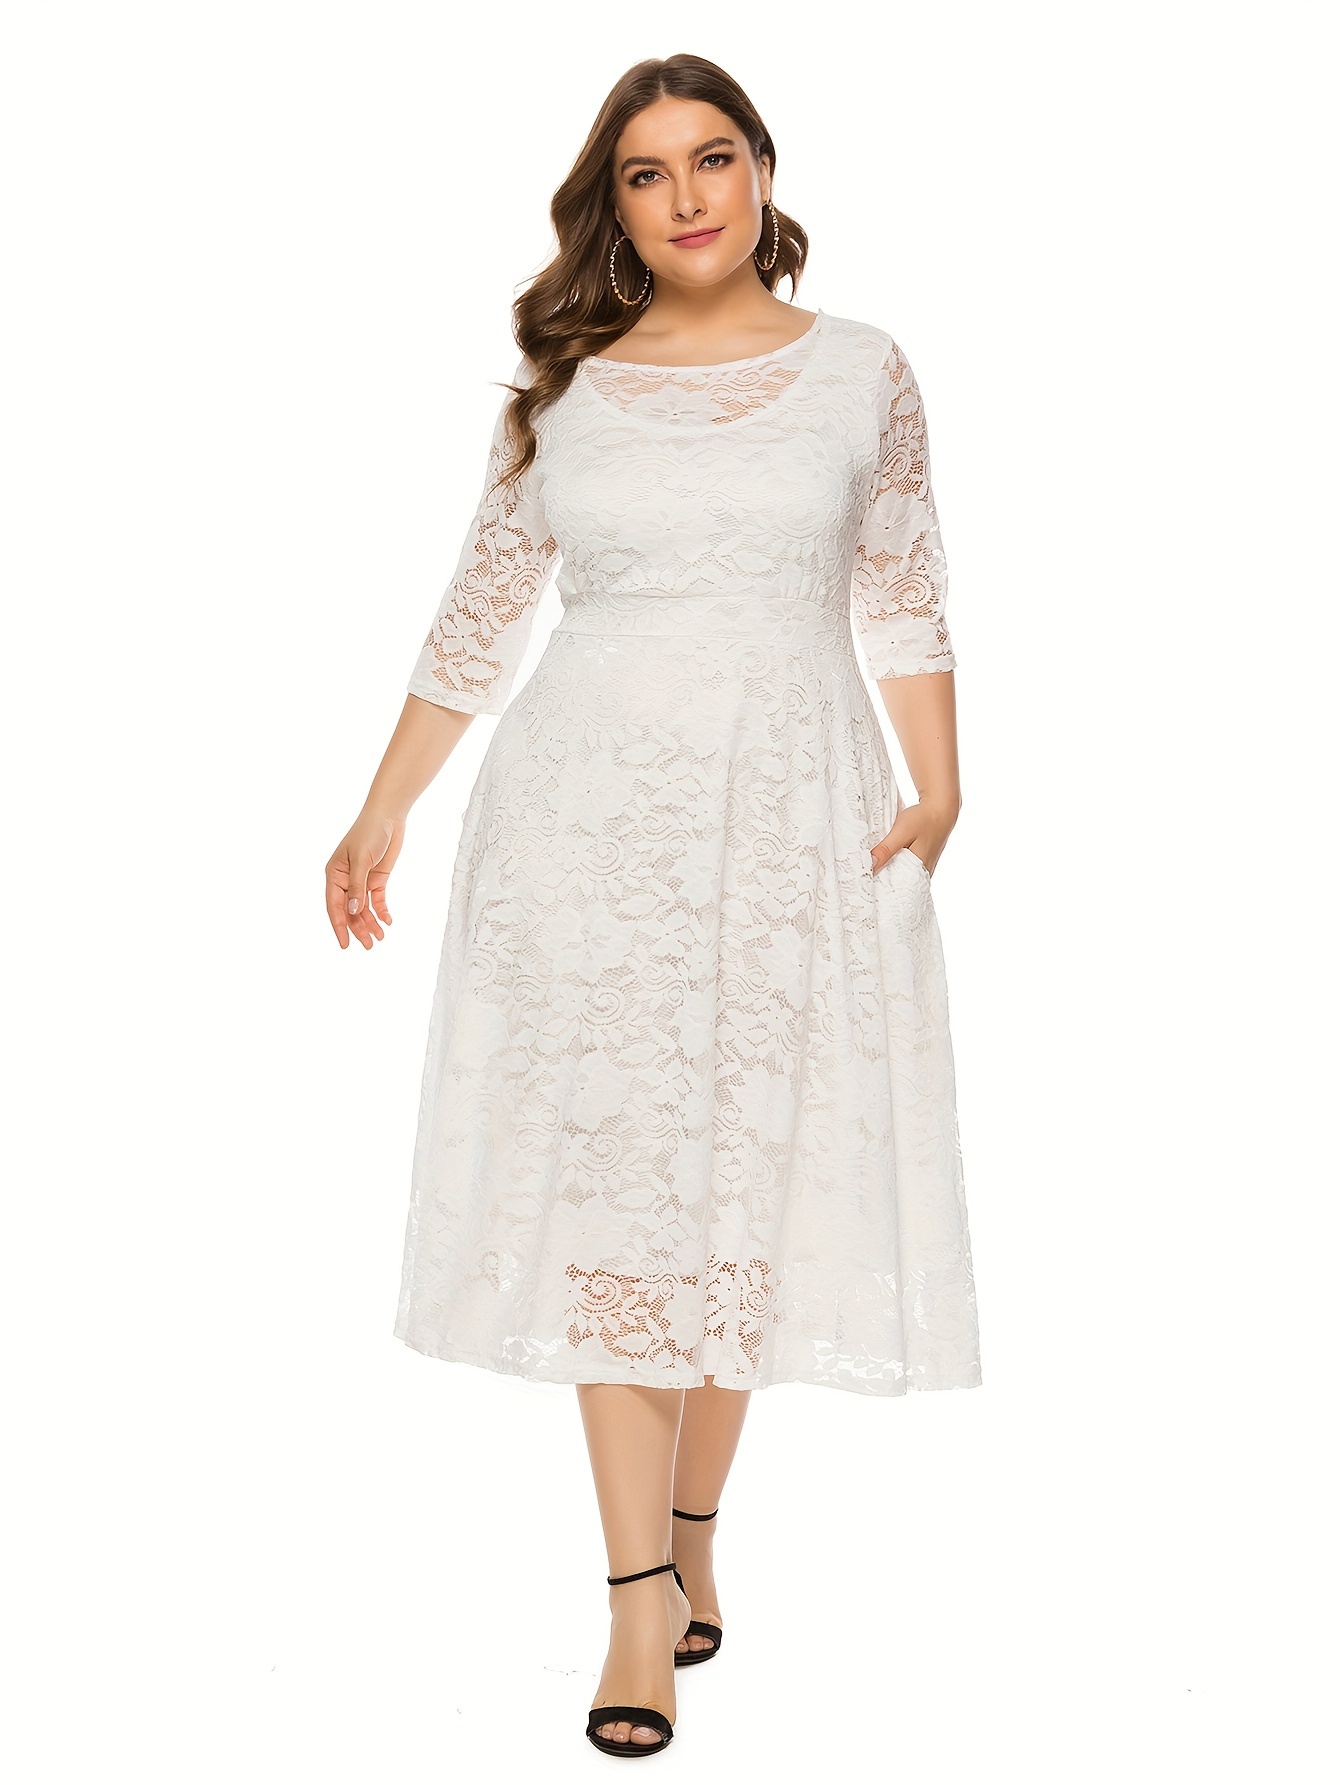  WISFRUIT Womens Floral lace Plus Size Midi Dress 3/4